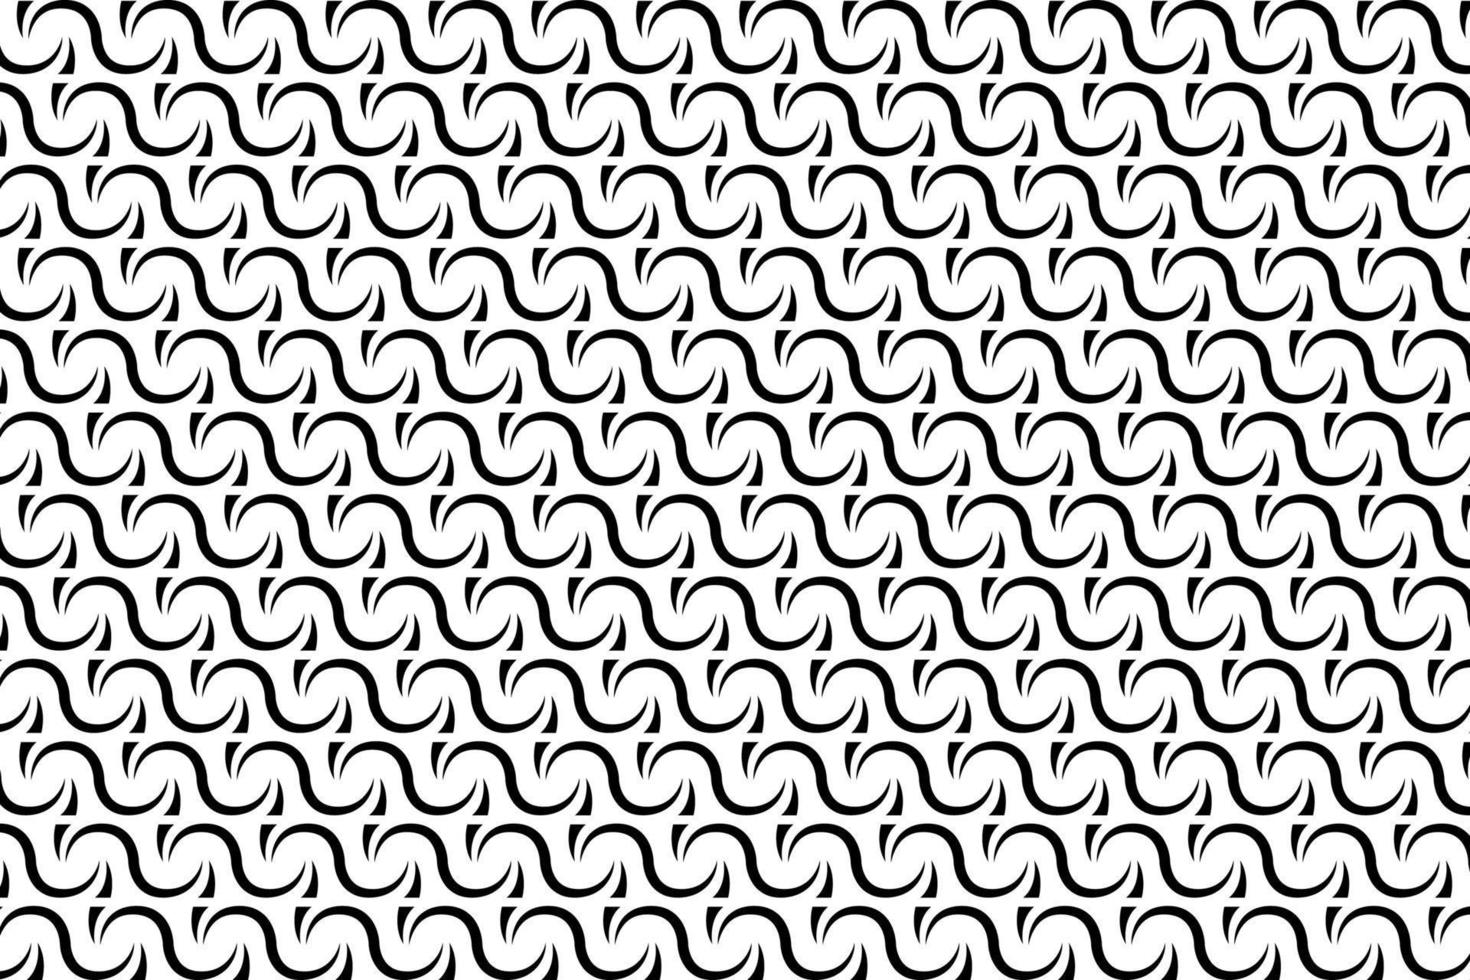 abstrakt schwarz und Weiß Vektor geometrisch nahtlos Muster. wiederholen befliesbar, Mosaik Muster. Herstellung Sie Ideal zum verwenden im ein Vielfalt von Grafik Design Projekte, wie Webseiten, Textilien und andere.